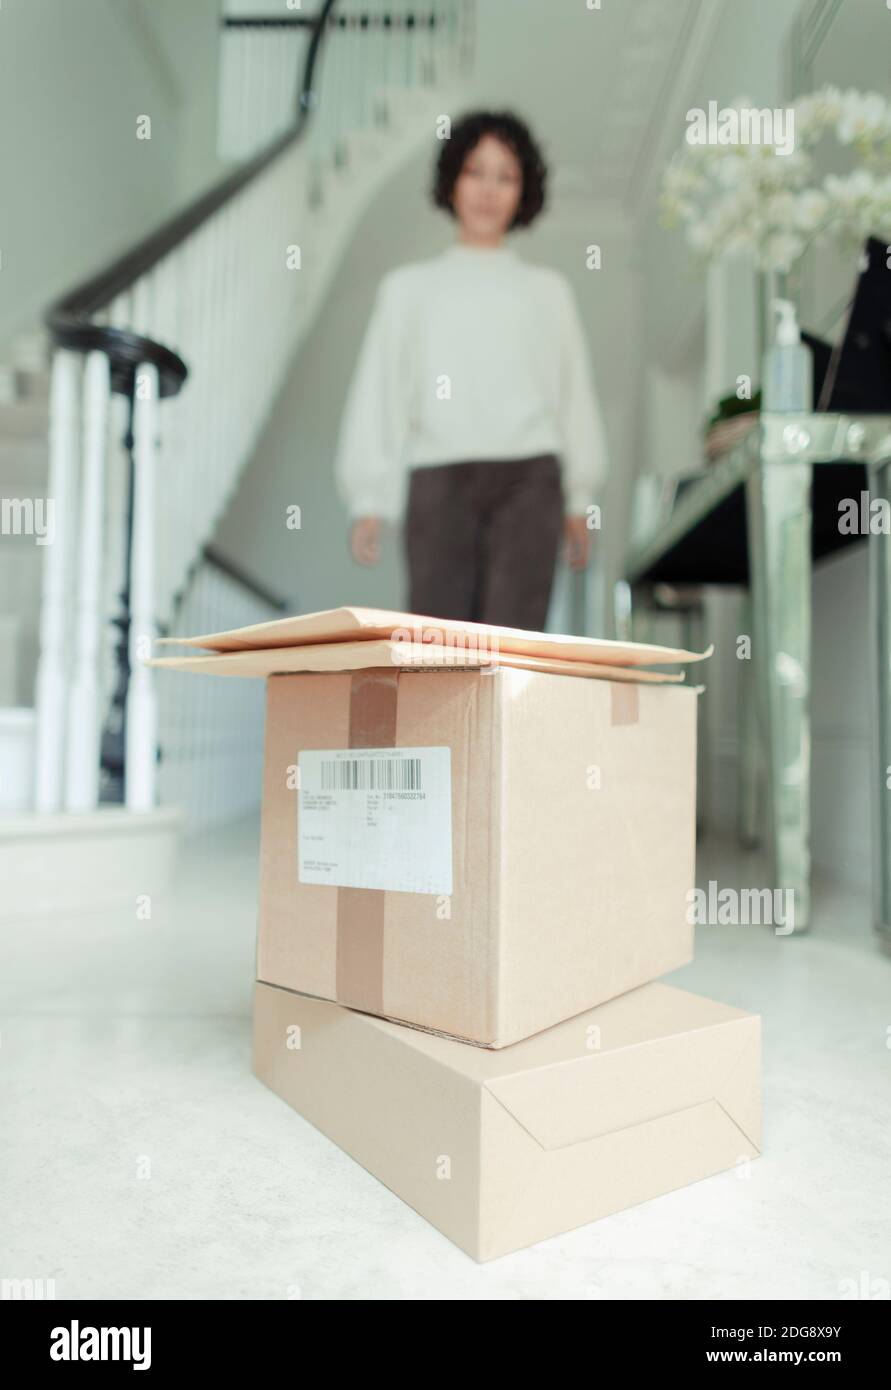 Mujer acercándose a la pila de cajas de entrega en el piso del vestíbulo Foto de stock